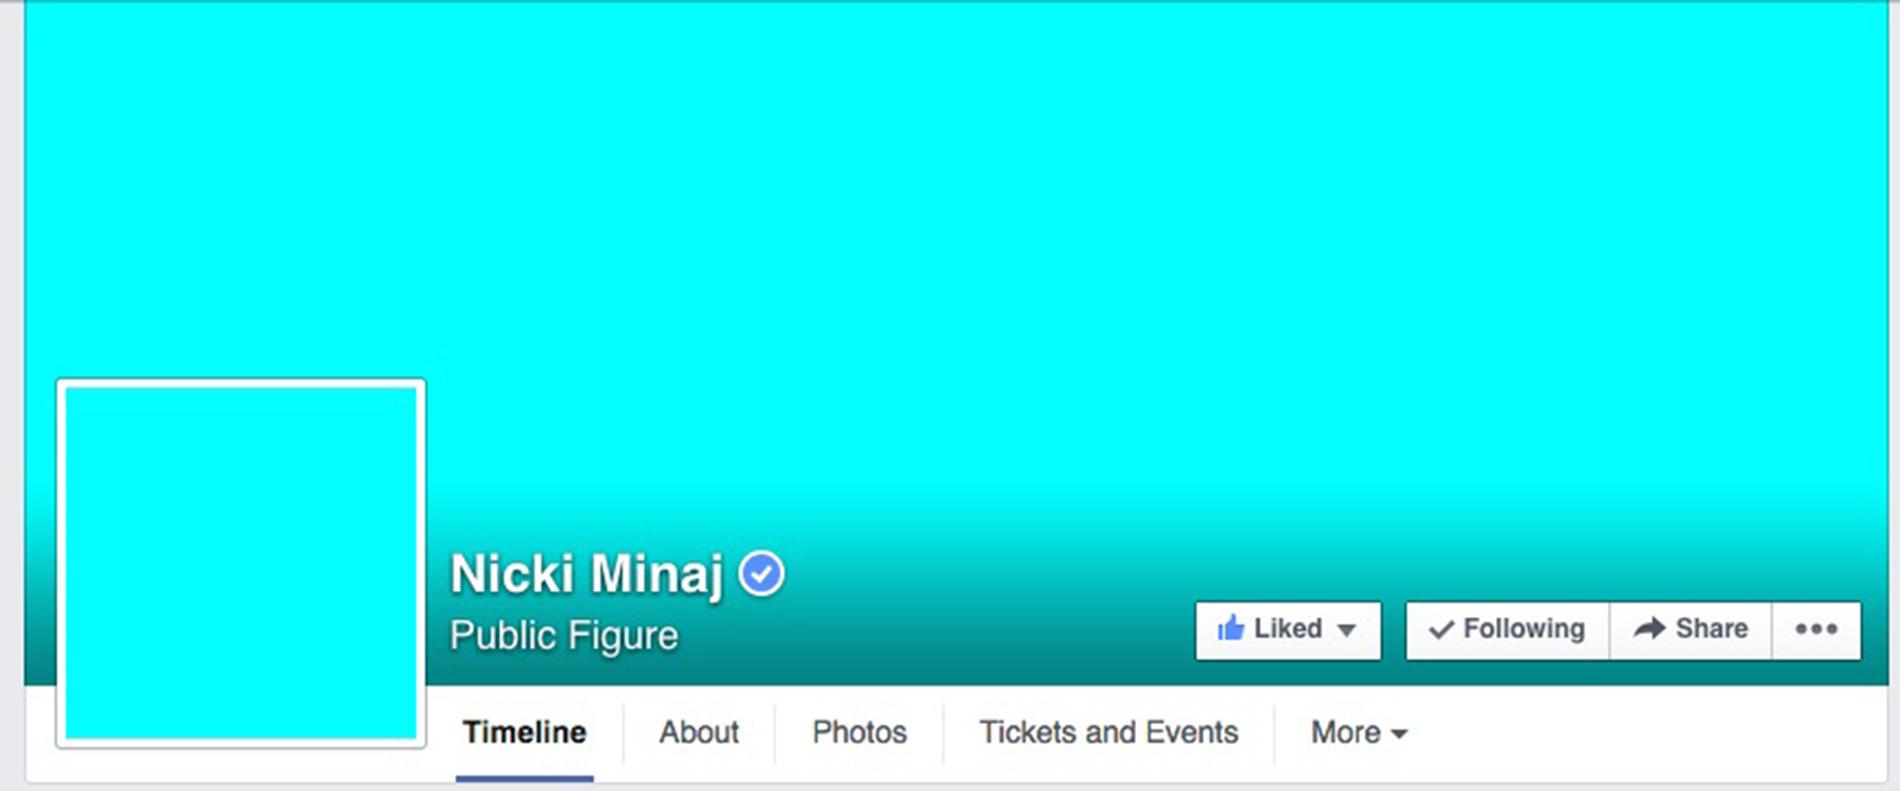 Nicki Minaj gör reklam för den nya musiktjänsten genom att byta både profil- och bakgrundsbild till en turkos platta. Skärmdump från Facebook.